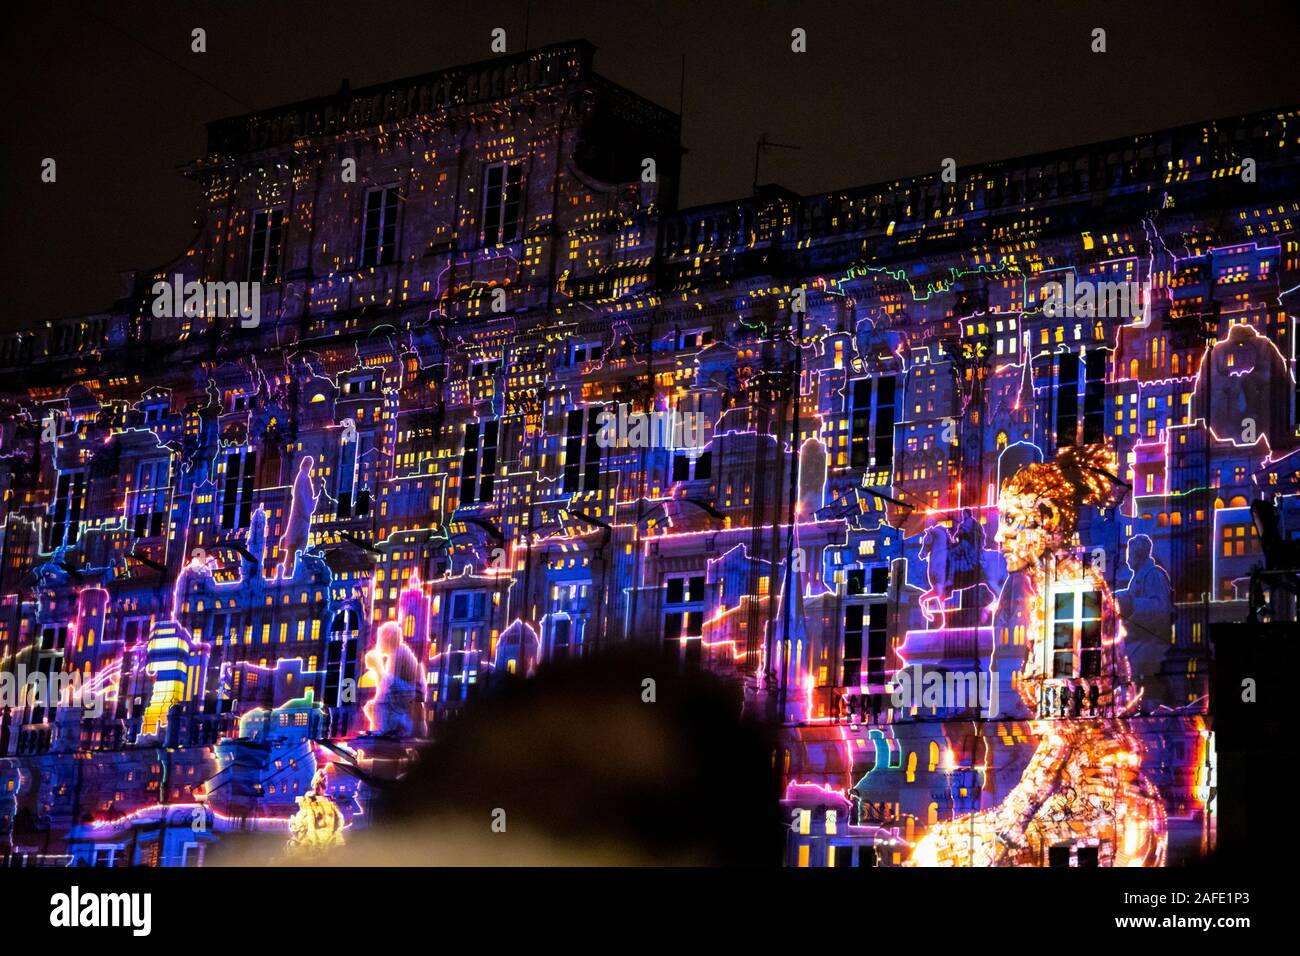 Spectaculaires - Une toute petite histoire de lumiere - Place Terreaux -Fête des Lumières - Ville de Lyon - Annual Festival of Lights in Lyon, France - December 2019 Stock Photo